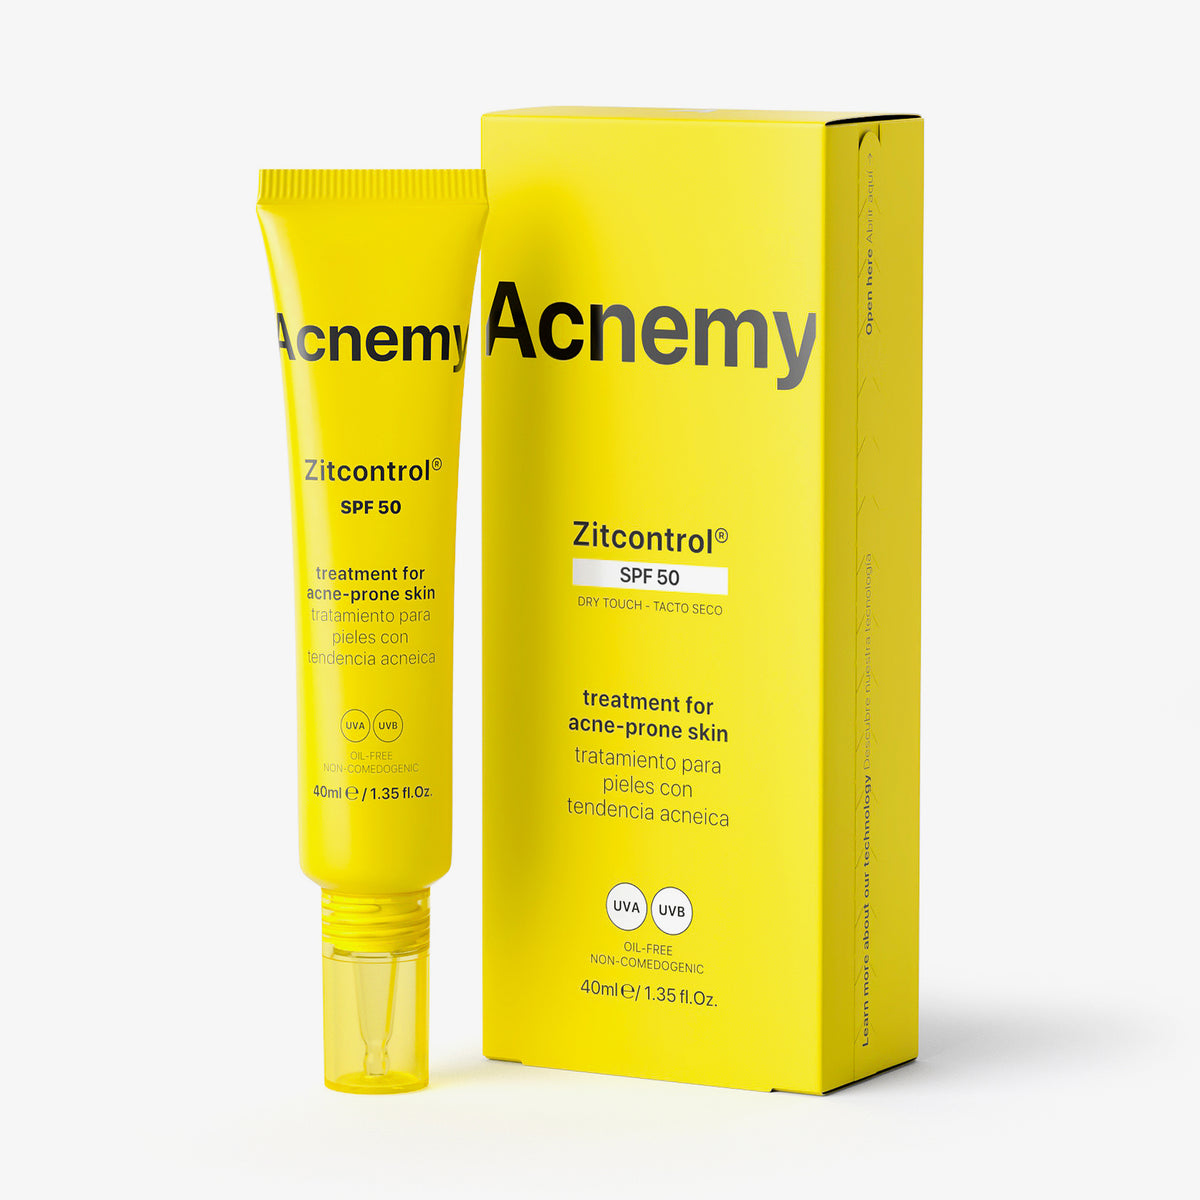 Eine Tube Acnemy Zitcontrol® SPF 50 plus Verpackung vor weißem Hintergrund